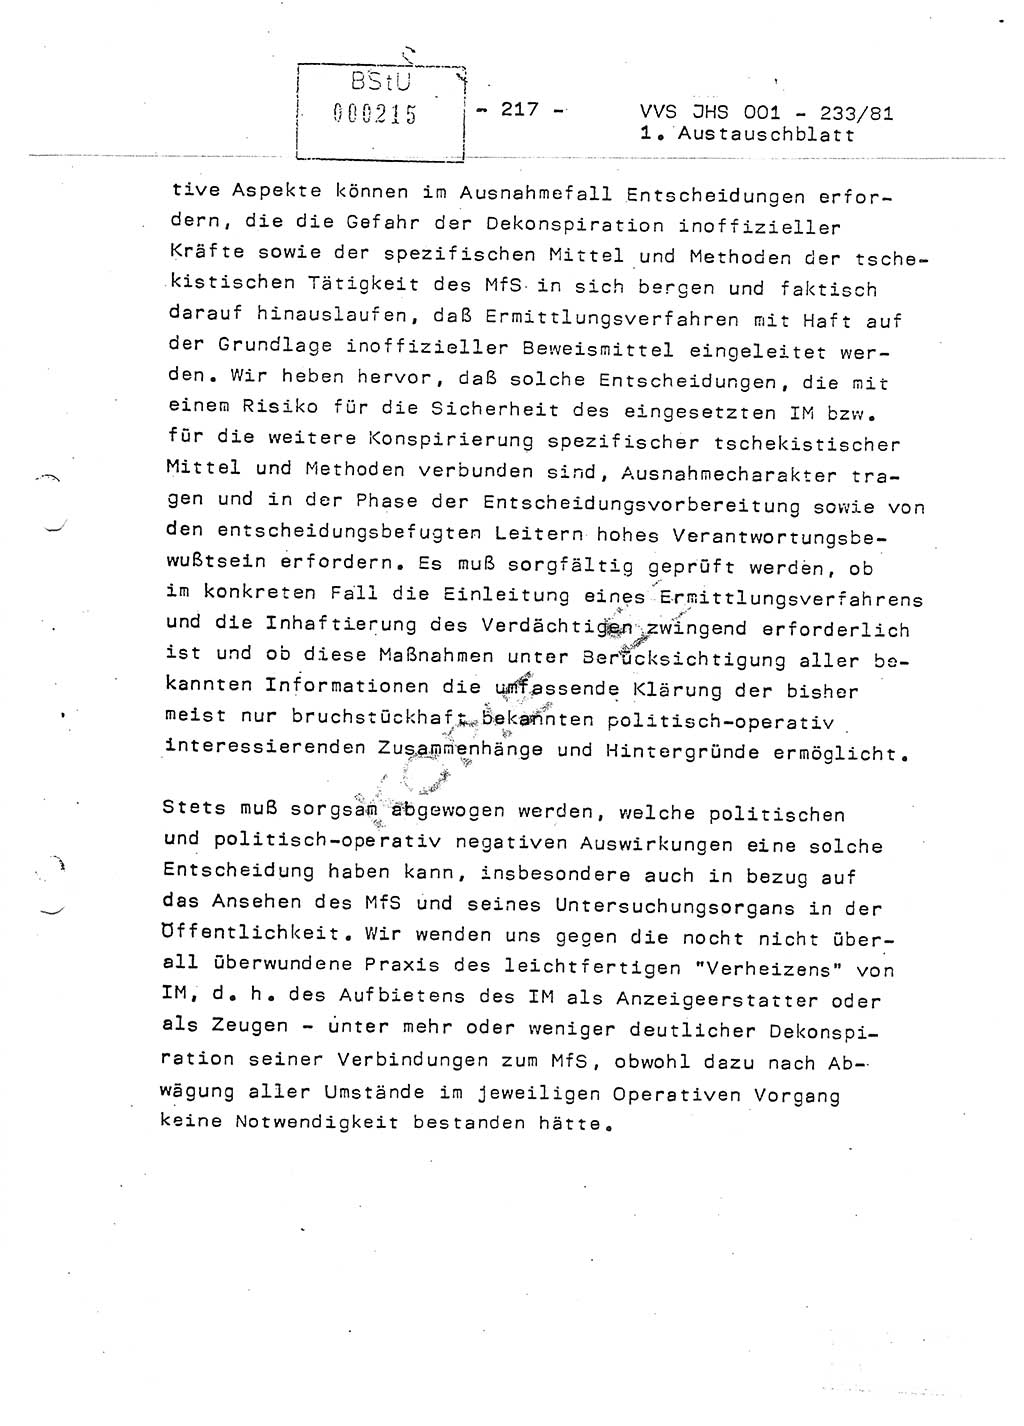 Dissertation Oberstleutnant Horst Zank (JHS), Oberstleutnant Dr. Karl-Heinz Knoblauch (JHS), Oberstleutnant Gustav-Adolf Kowalewski (HA Ⅸ), Oberstleutnant Wolfgang Plötner (HA Ⅸ), Ministerium für Staatssicherheit (MfS) [Deutsche Demokratische Republik (DDR)], Juristische Hochschule (JHS), Vertrauliche Verschlußsache (VVS) o001-233/81, Potsdam 1981, Blatt 217 (Diss. MfS DDR JHS VVS o001-233/81 1981, Bl. 217)